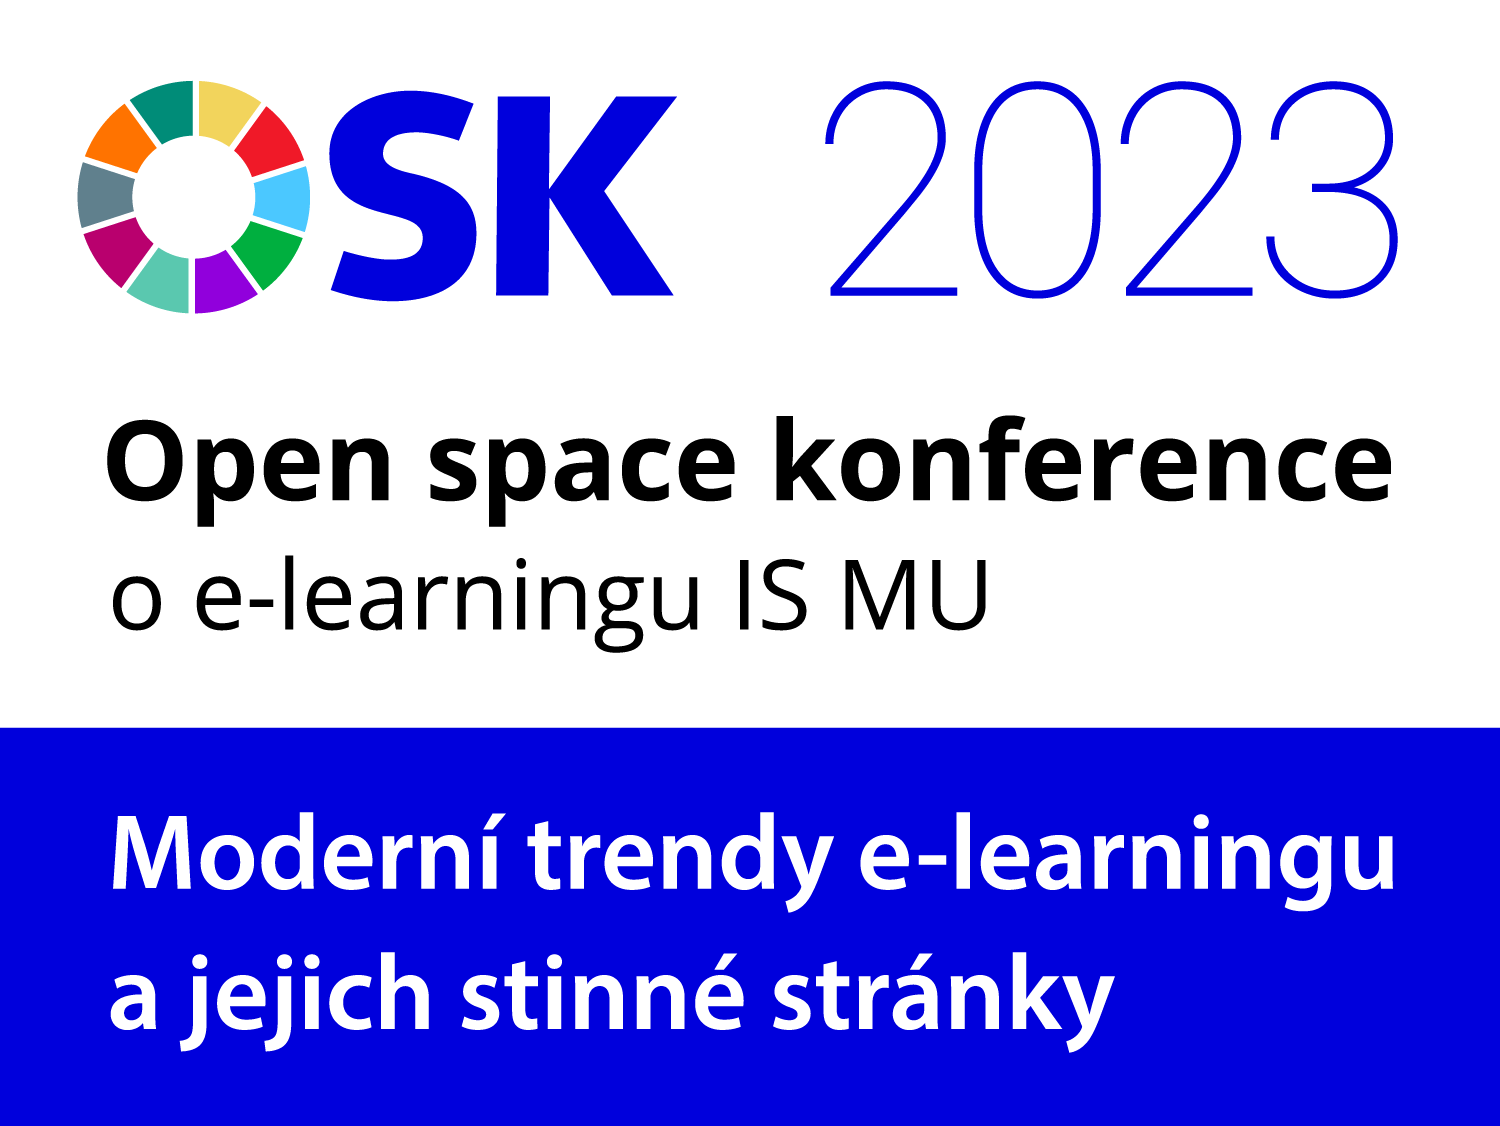 Open space konference o e-learningu IS MU – Moderní trendy e-learningu a jejich stinné stránky